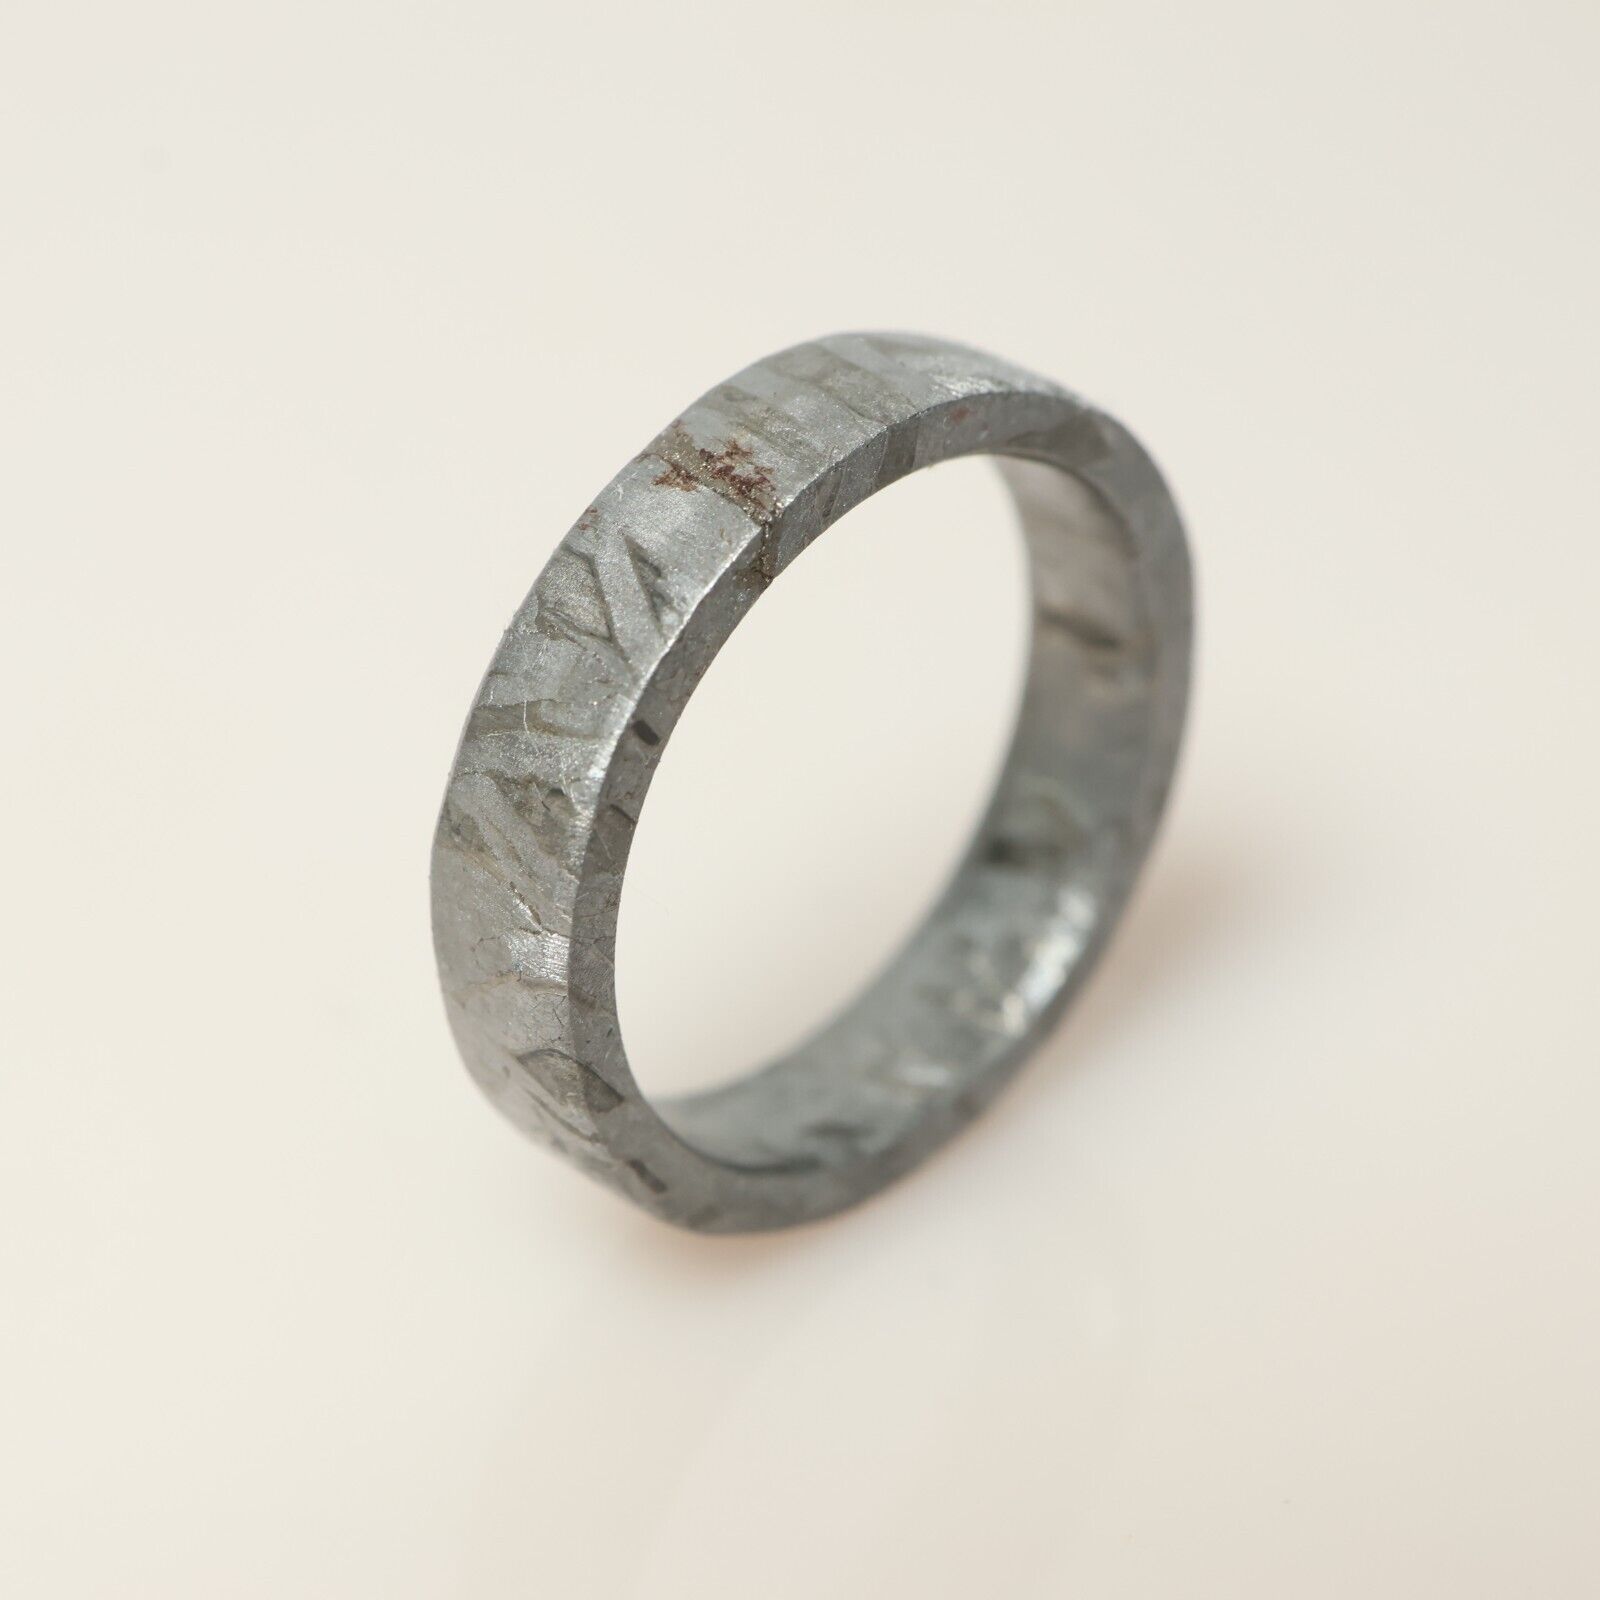 (US SIZE:5) Unique Muonionalusta meteorite ring Meteor Wedding Ring C7675